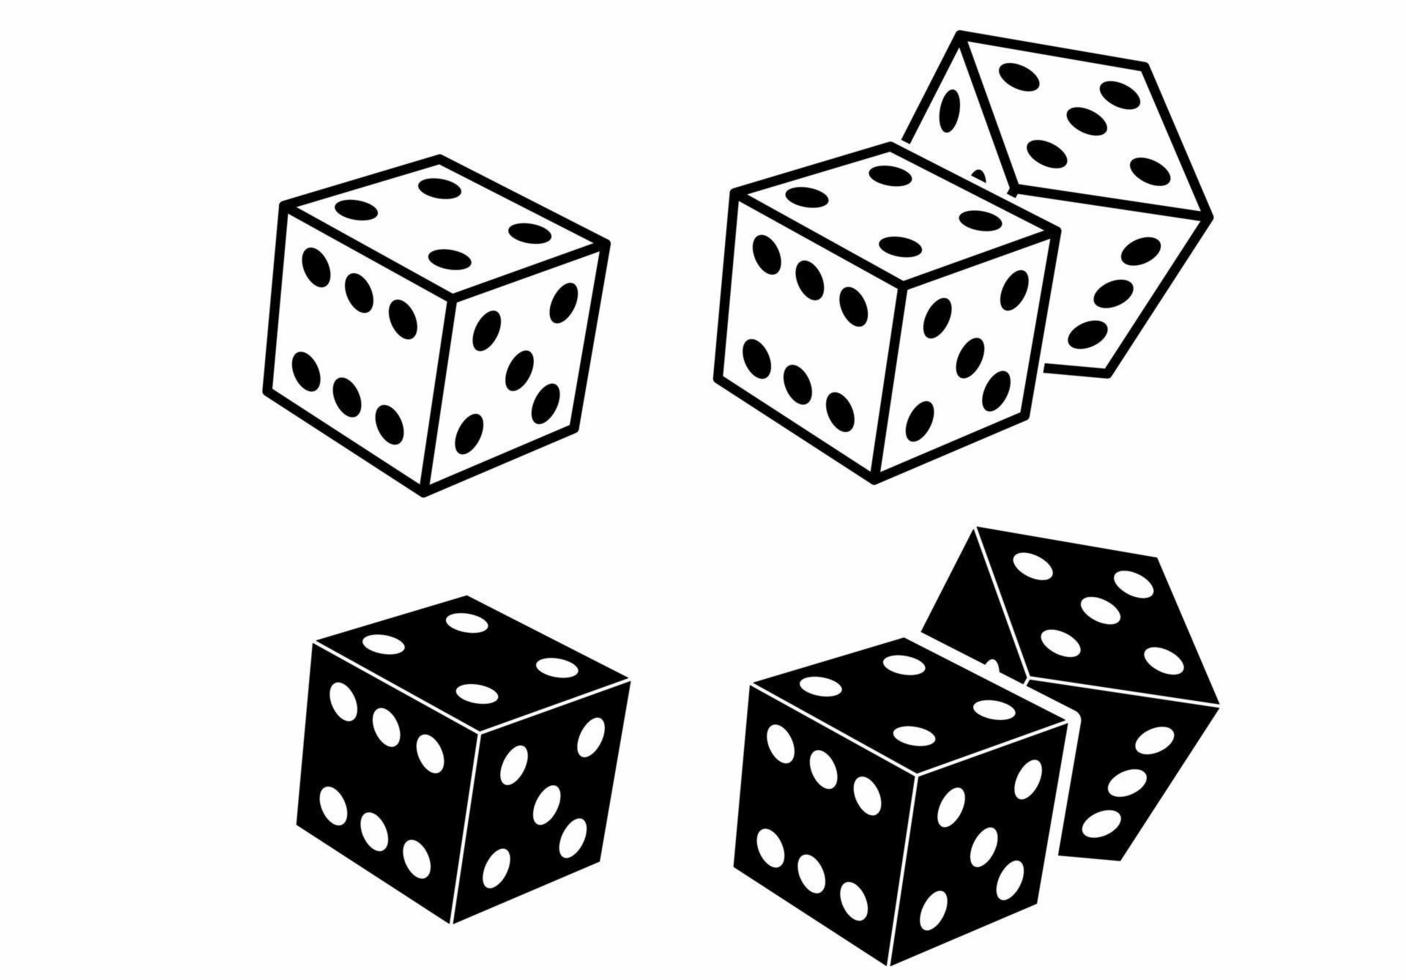 dobbelstenen kubus icon set geïsoleerd op een witte achtergrond vector